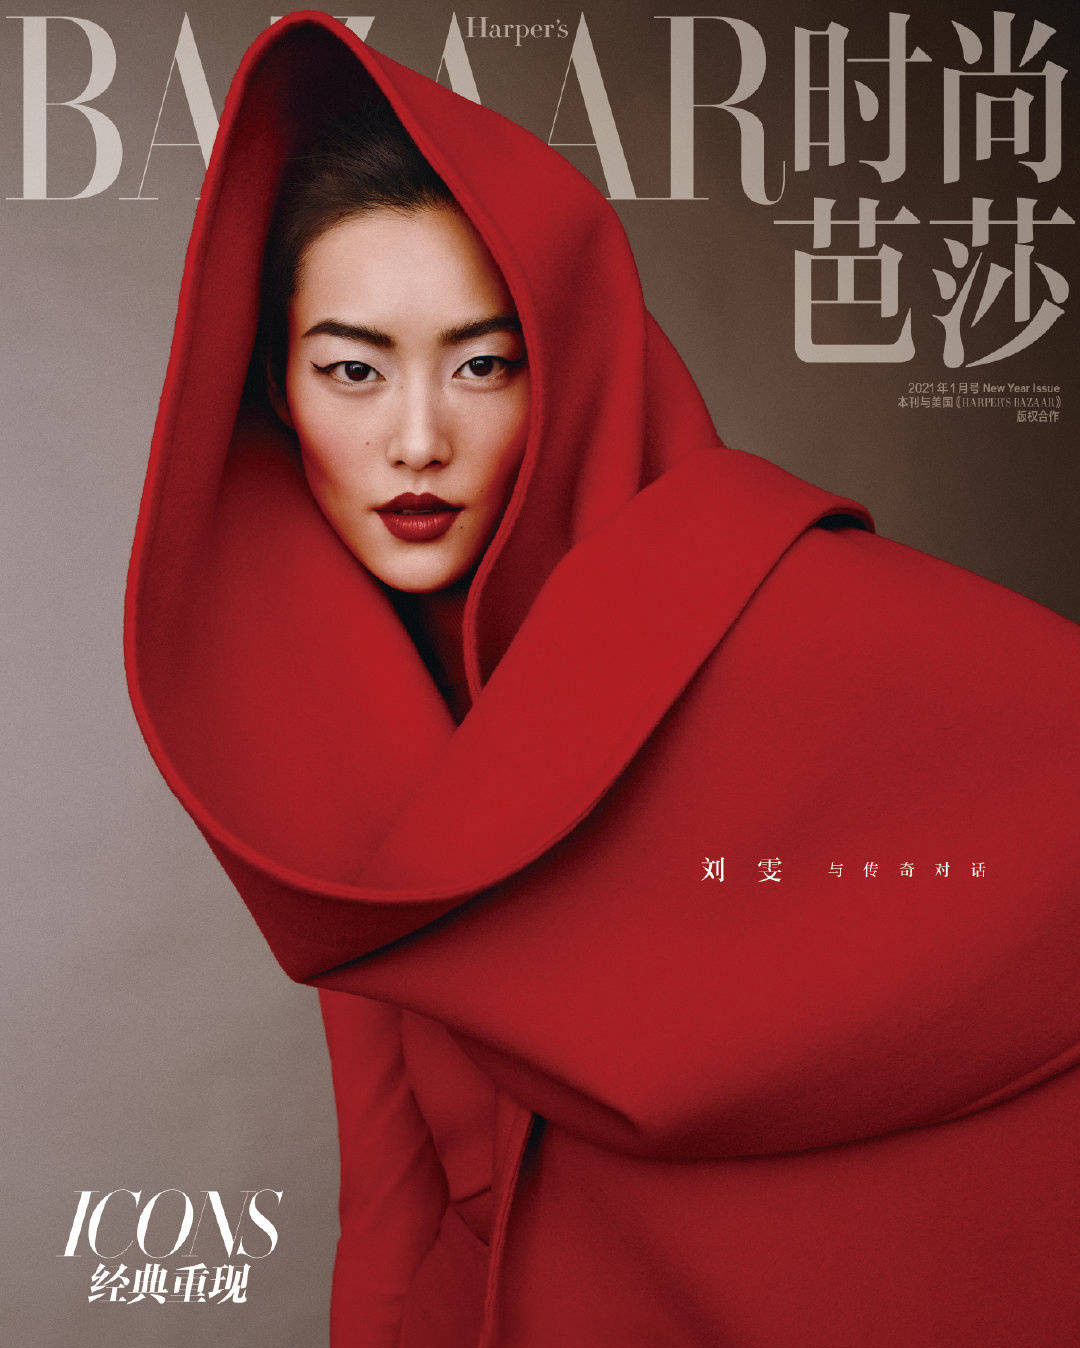 Người mẫu Liu Wen đã xuất hiện ấn tượng trên trang bìa Bazaar với đôi môi đỏ mọng và tạo dáng trong bộ trang phục đỏ trùm đầu.